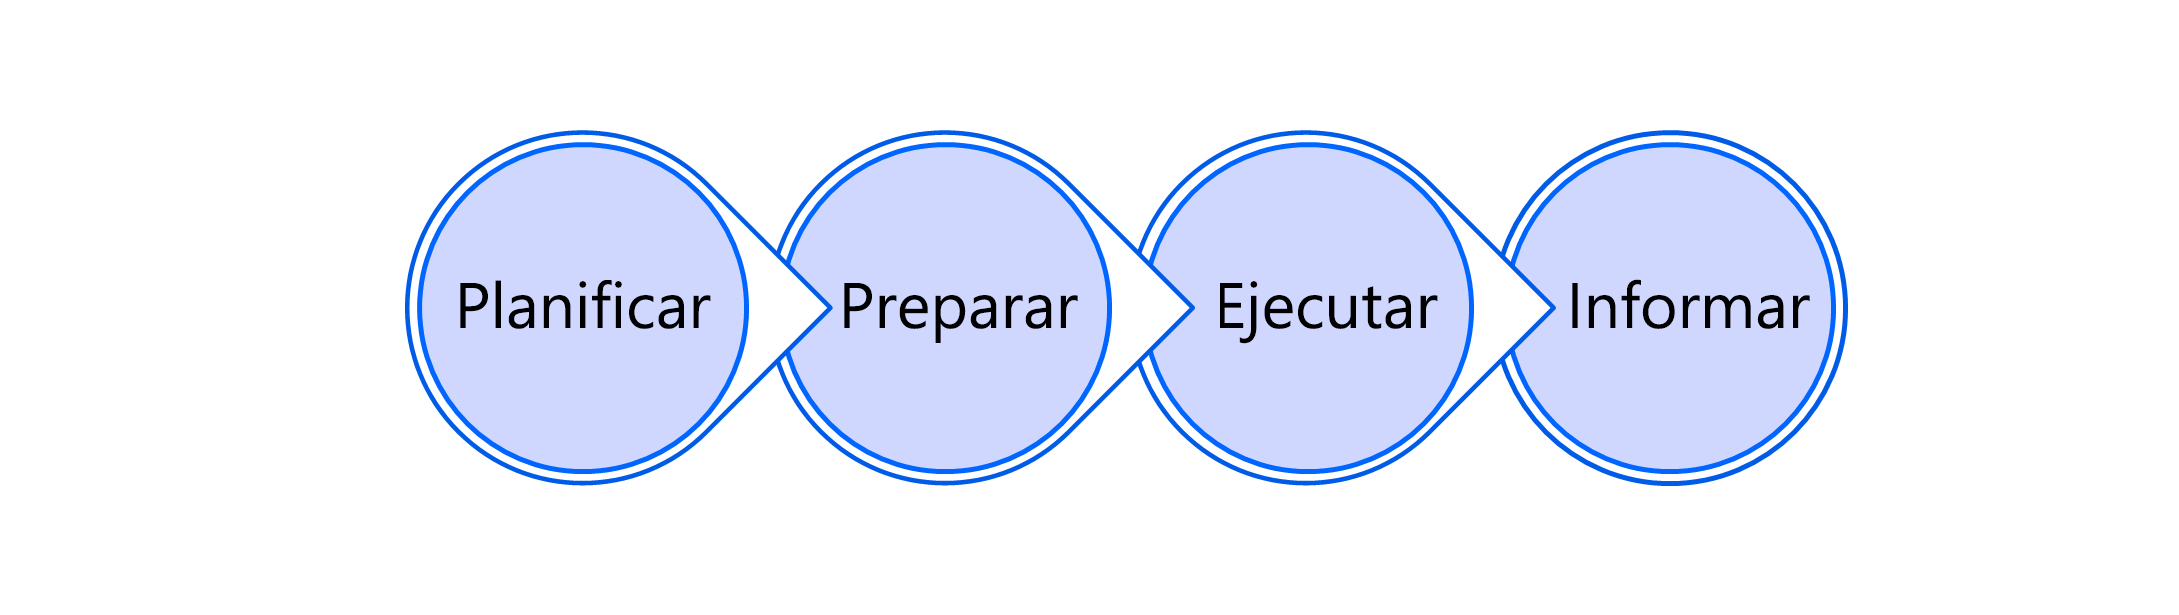 Diagrama del proceso de prueba con planificación, preparación, ejecución y elaboración de informes.